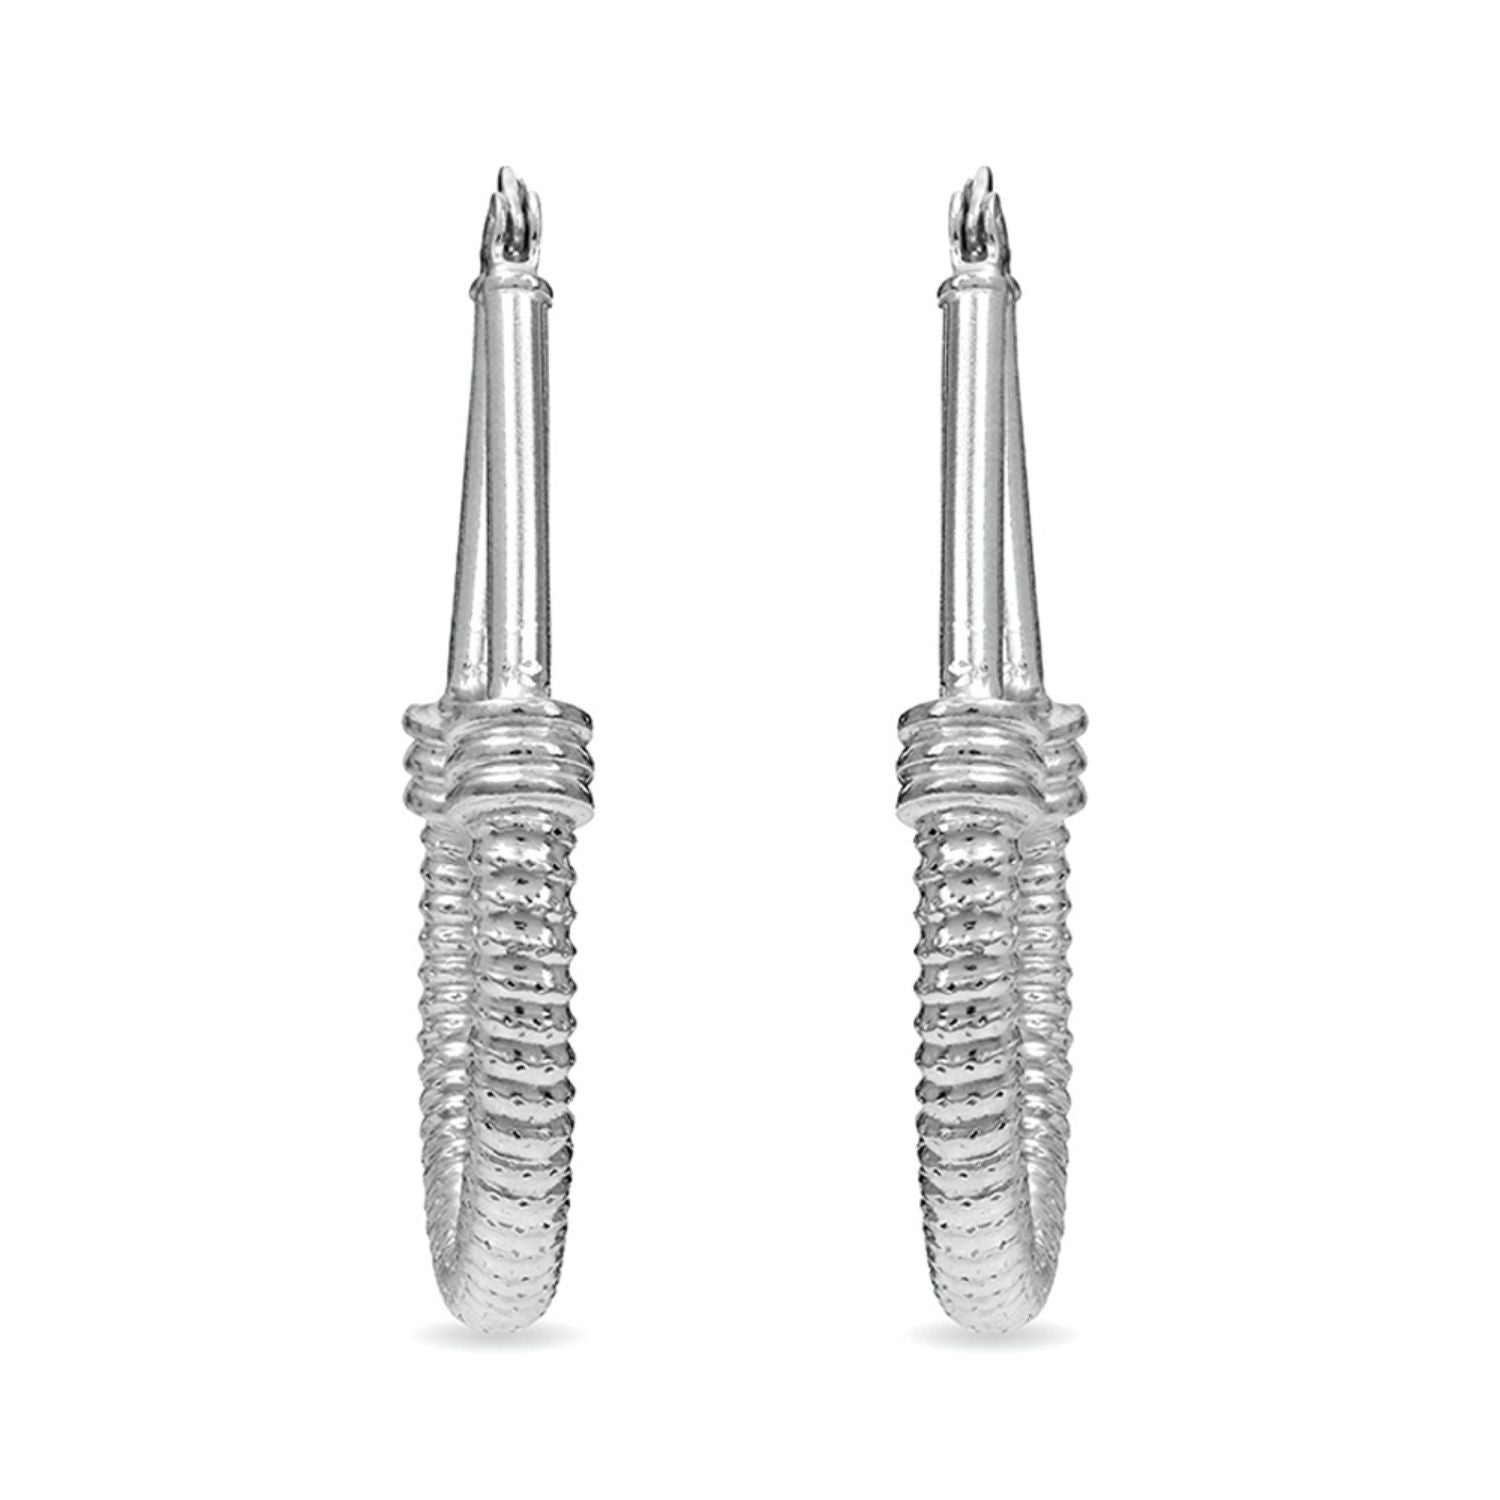 925 Sterling Silver Oval Diamond Cut Hoop Earrings for Women 35 MM